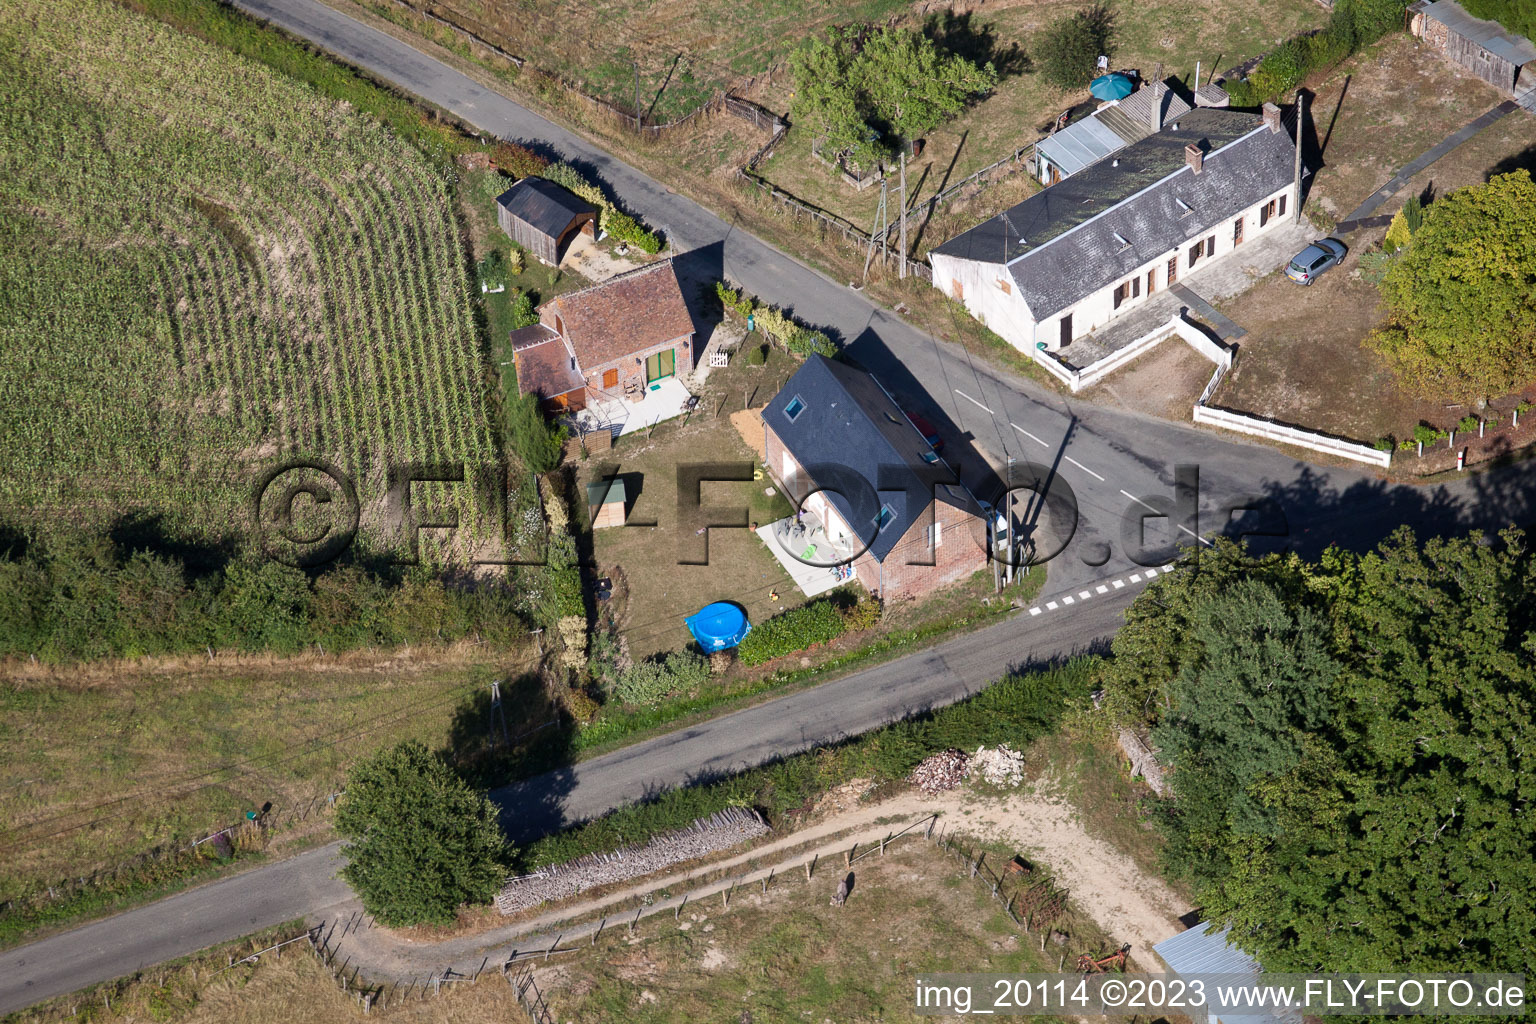 Luftbild von Semur-en-Vallon im Bundesland Sarthe, Frankreich